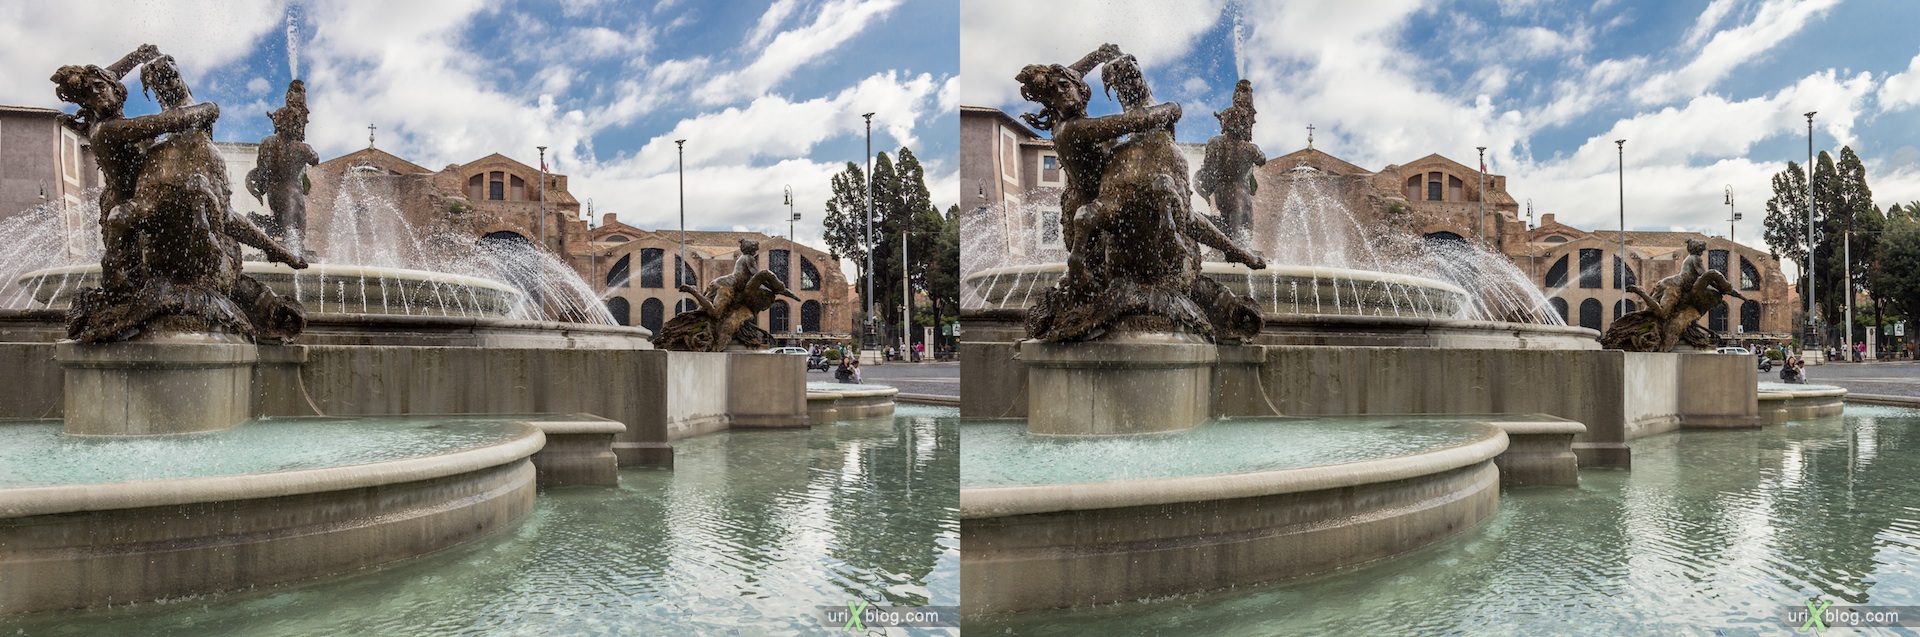 2012, фонтан Наяд, площадь Республики, Рим, Италия, 3D, перекрёстные стереопары, стерео, стереопара, стереопары